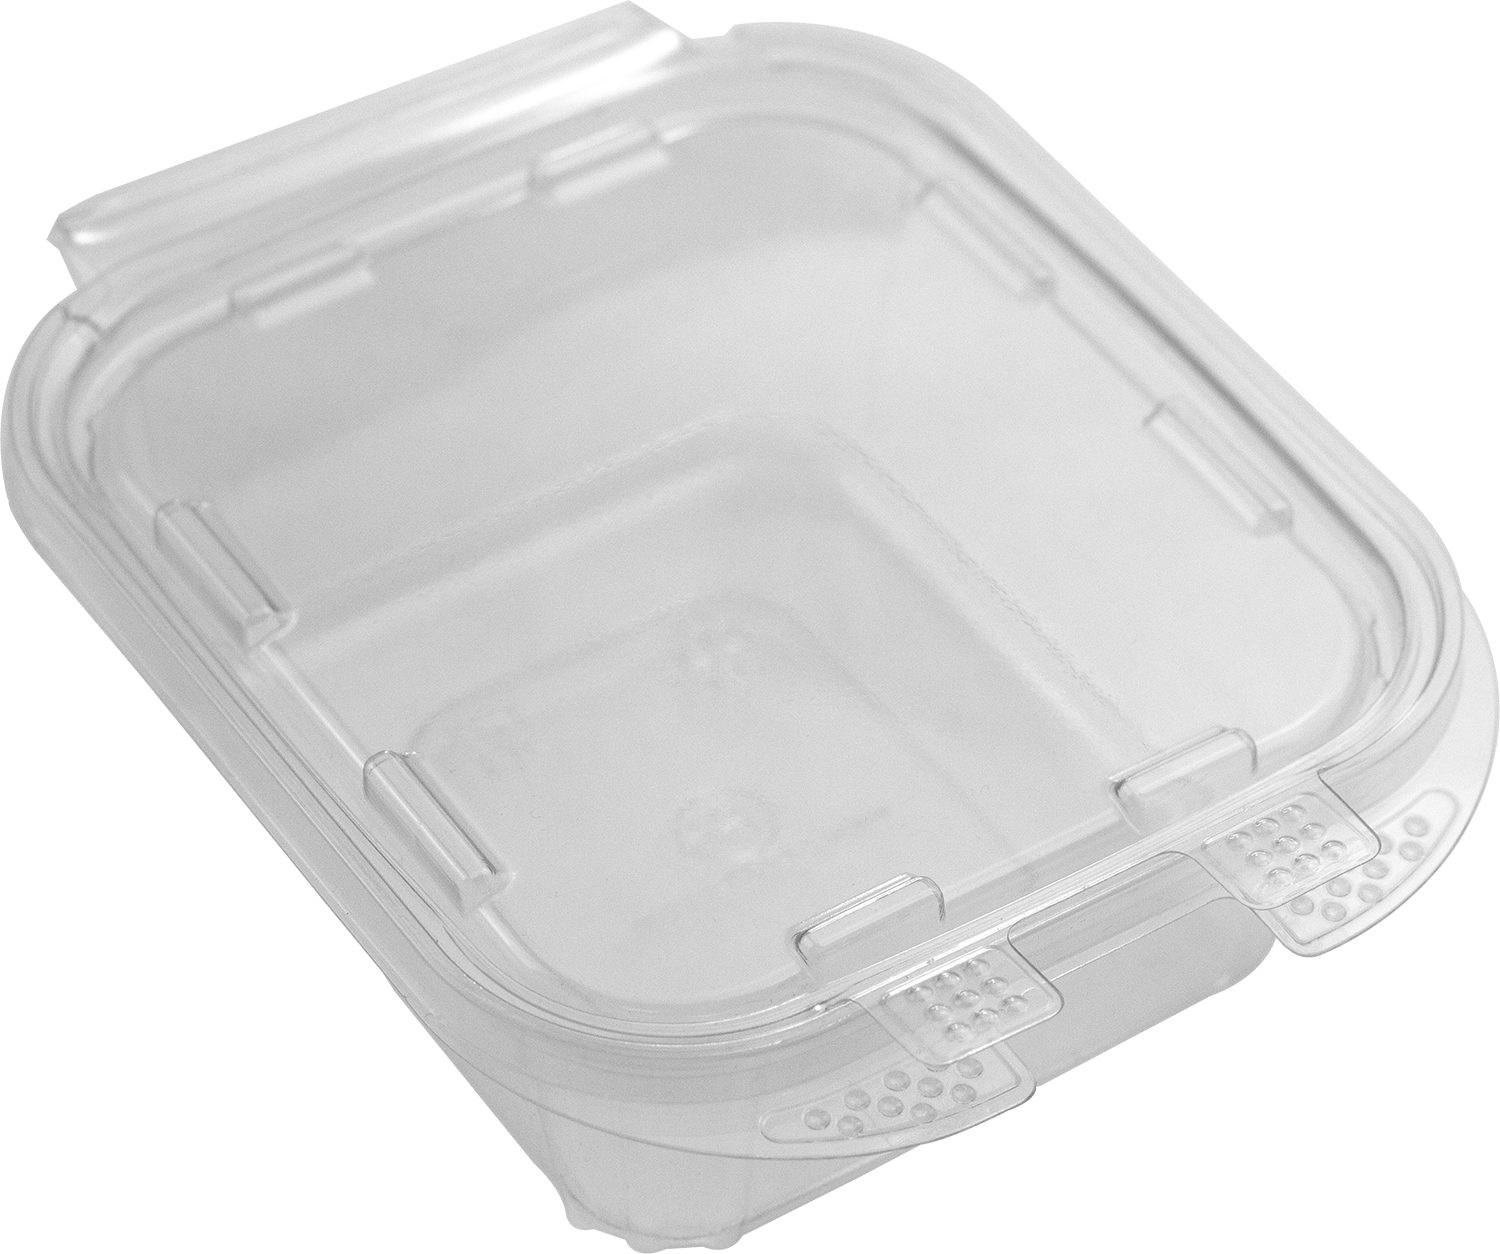 Envases de plástico desechables - Arapack